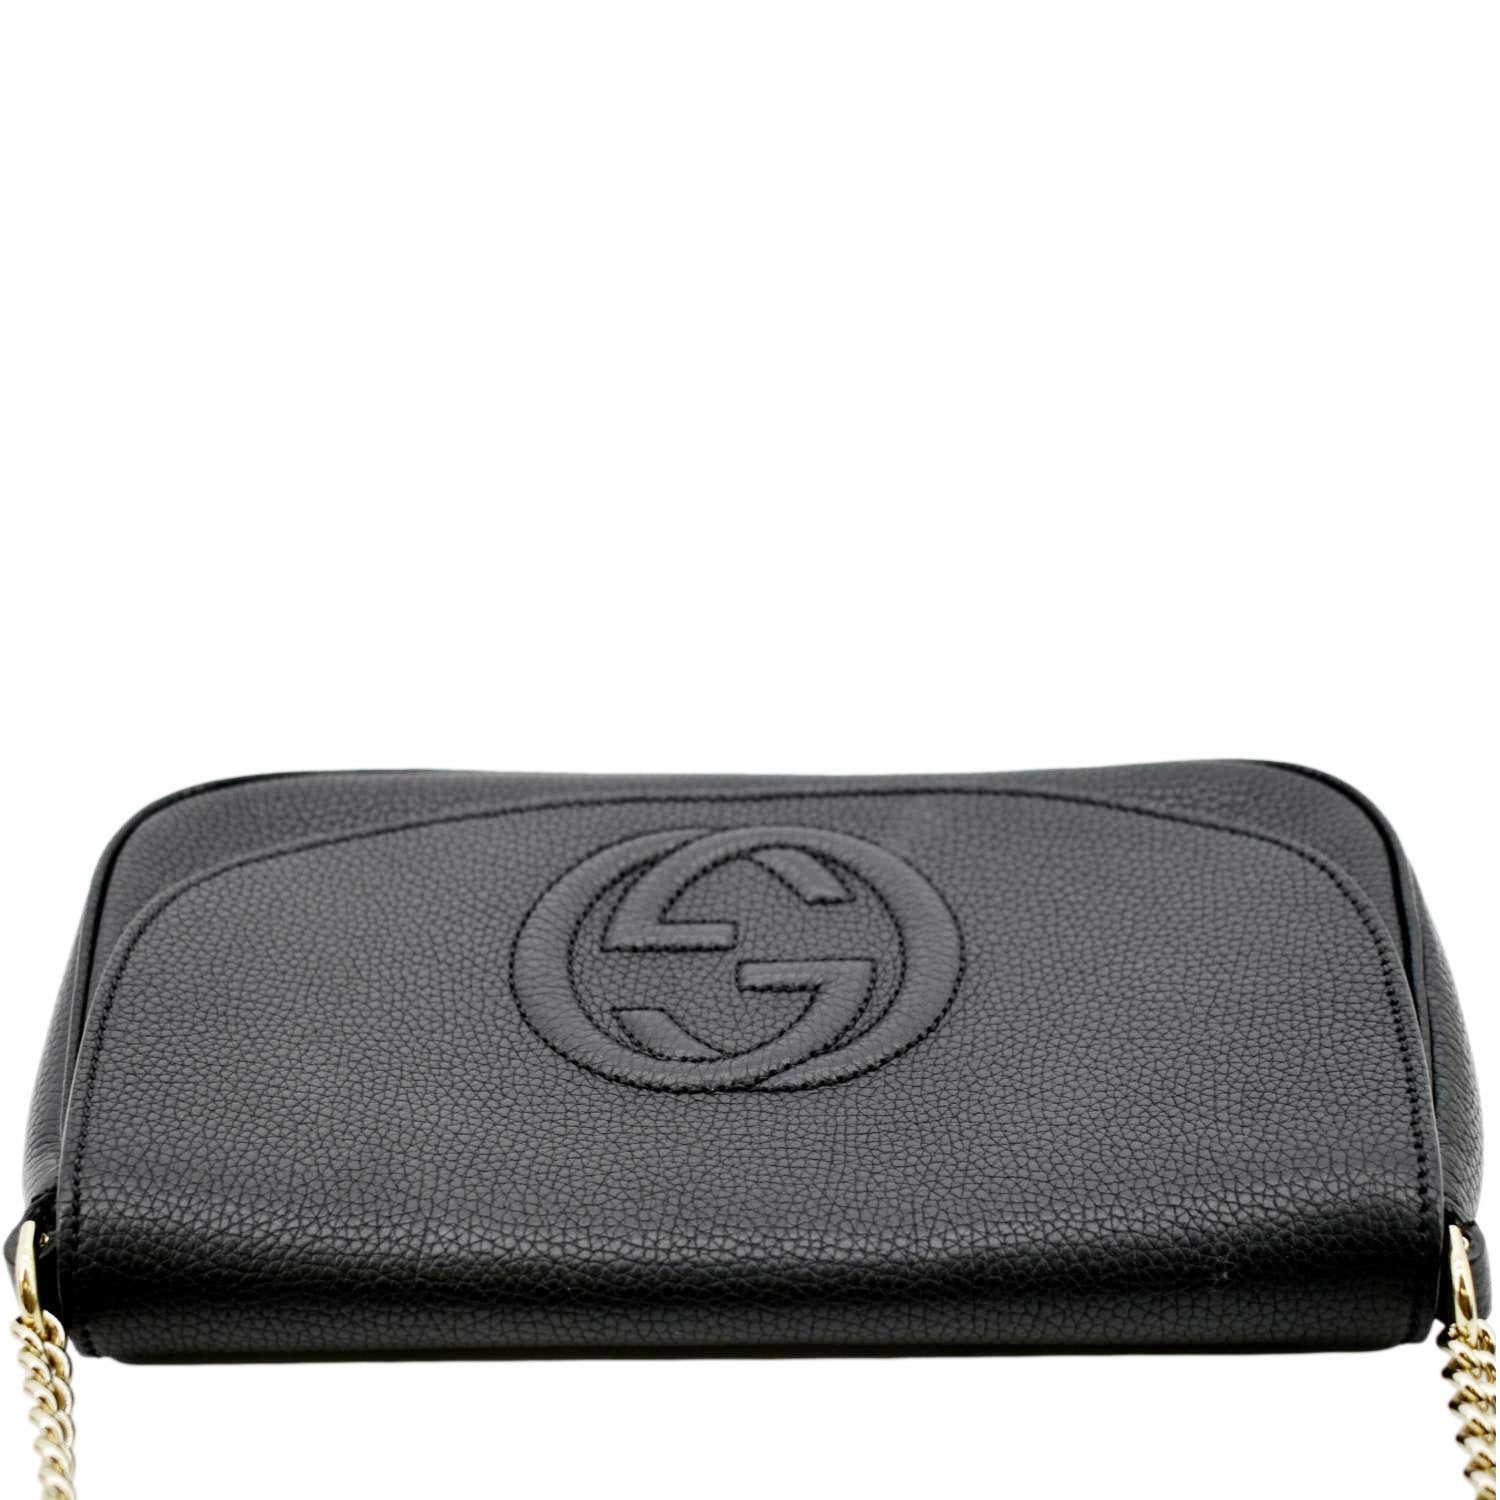 Gucci Soho Leather Flap Shoulder Bag Black Gold Tassel New